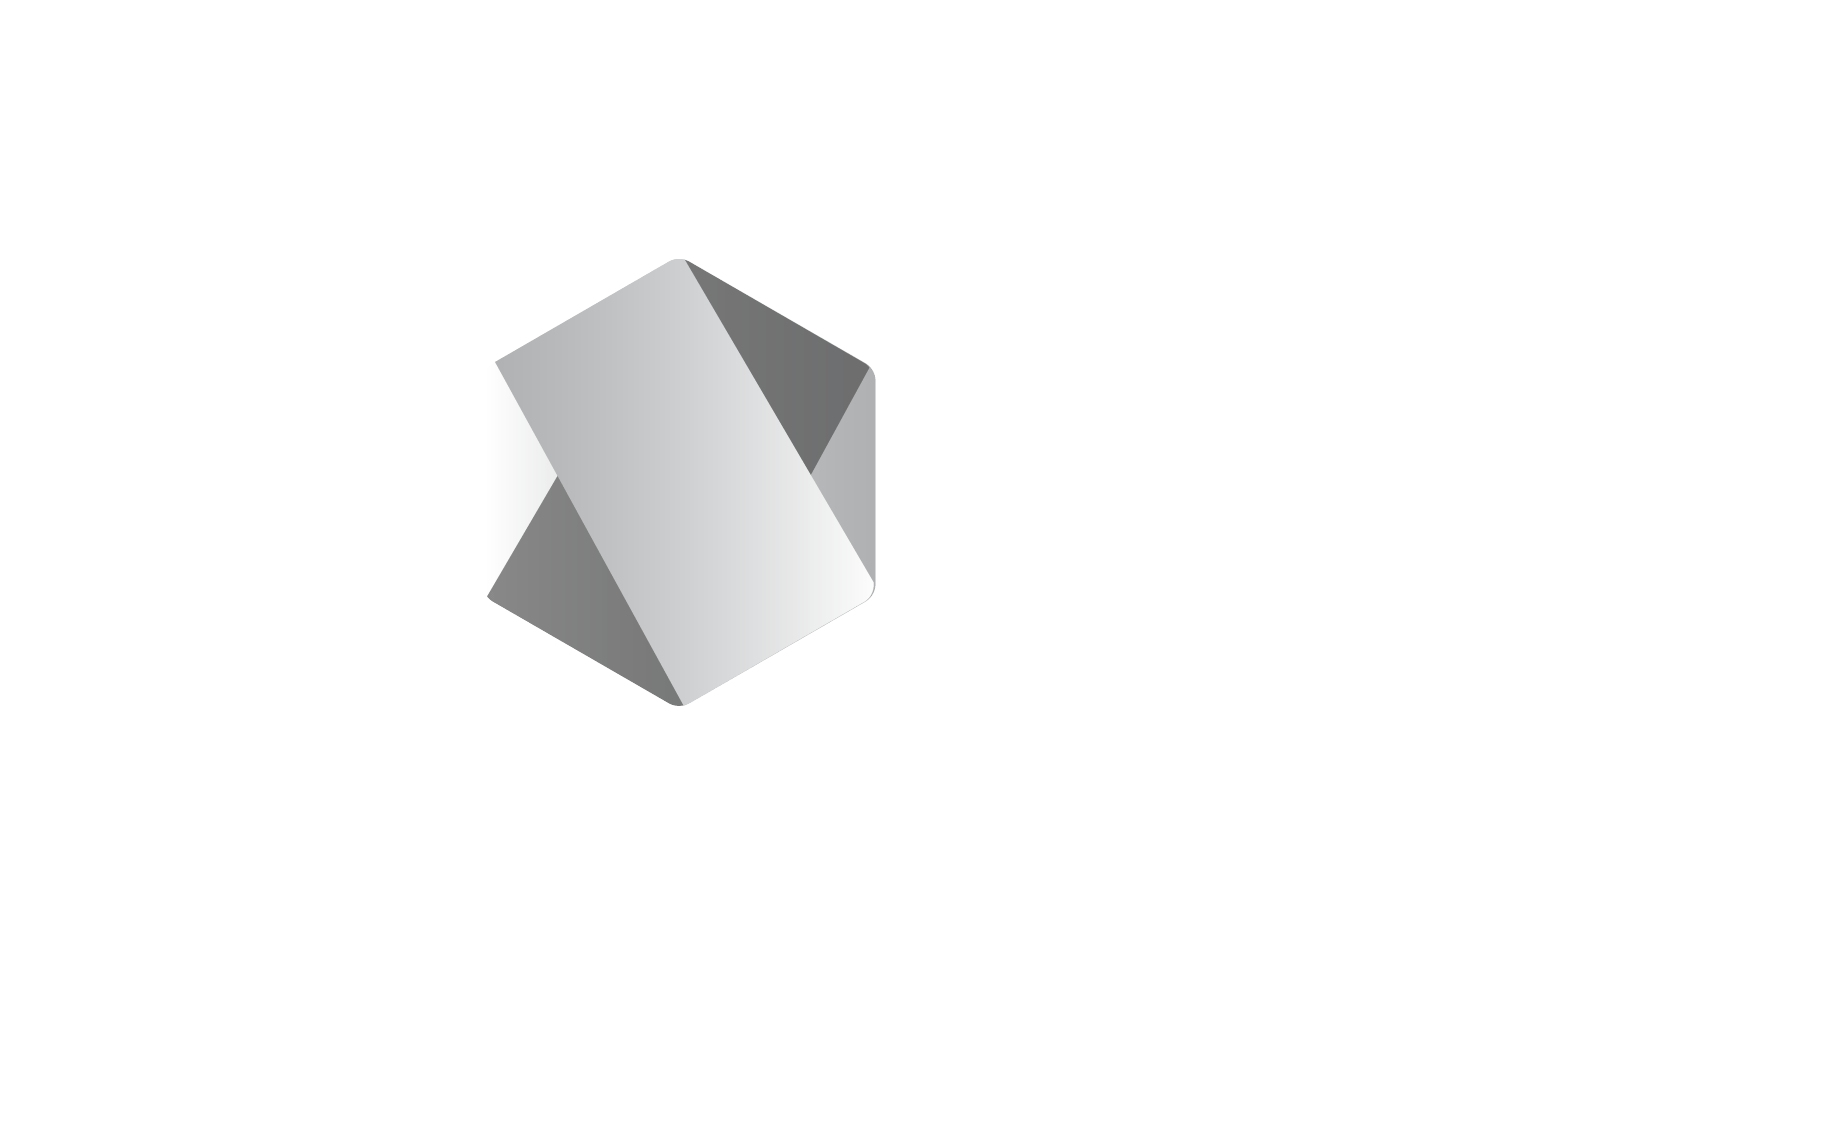 Less Logo - Logos and Graphics | Node.js